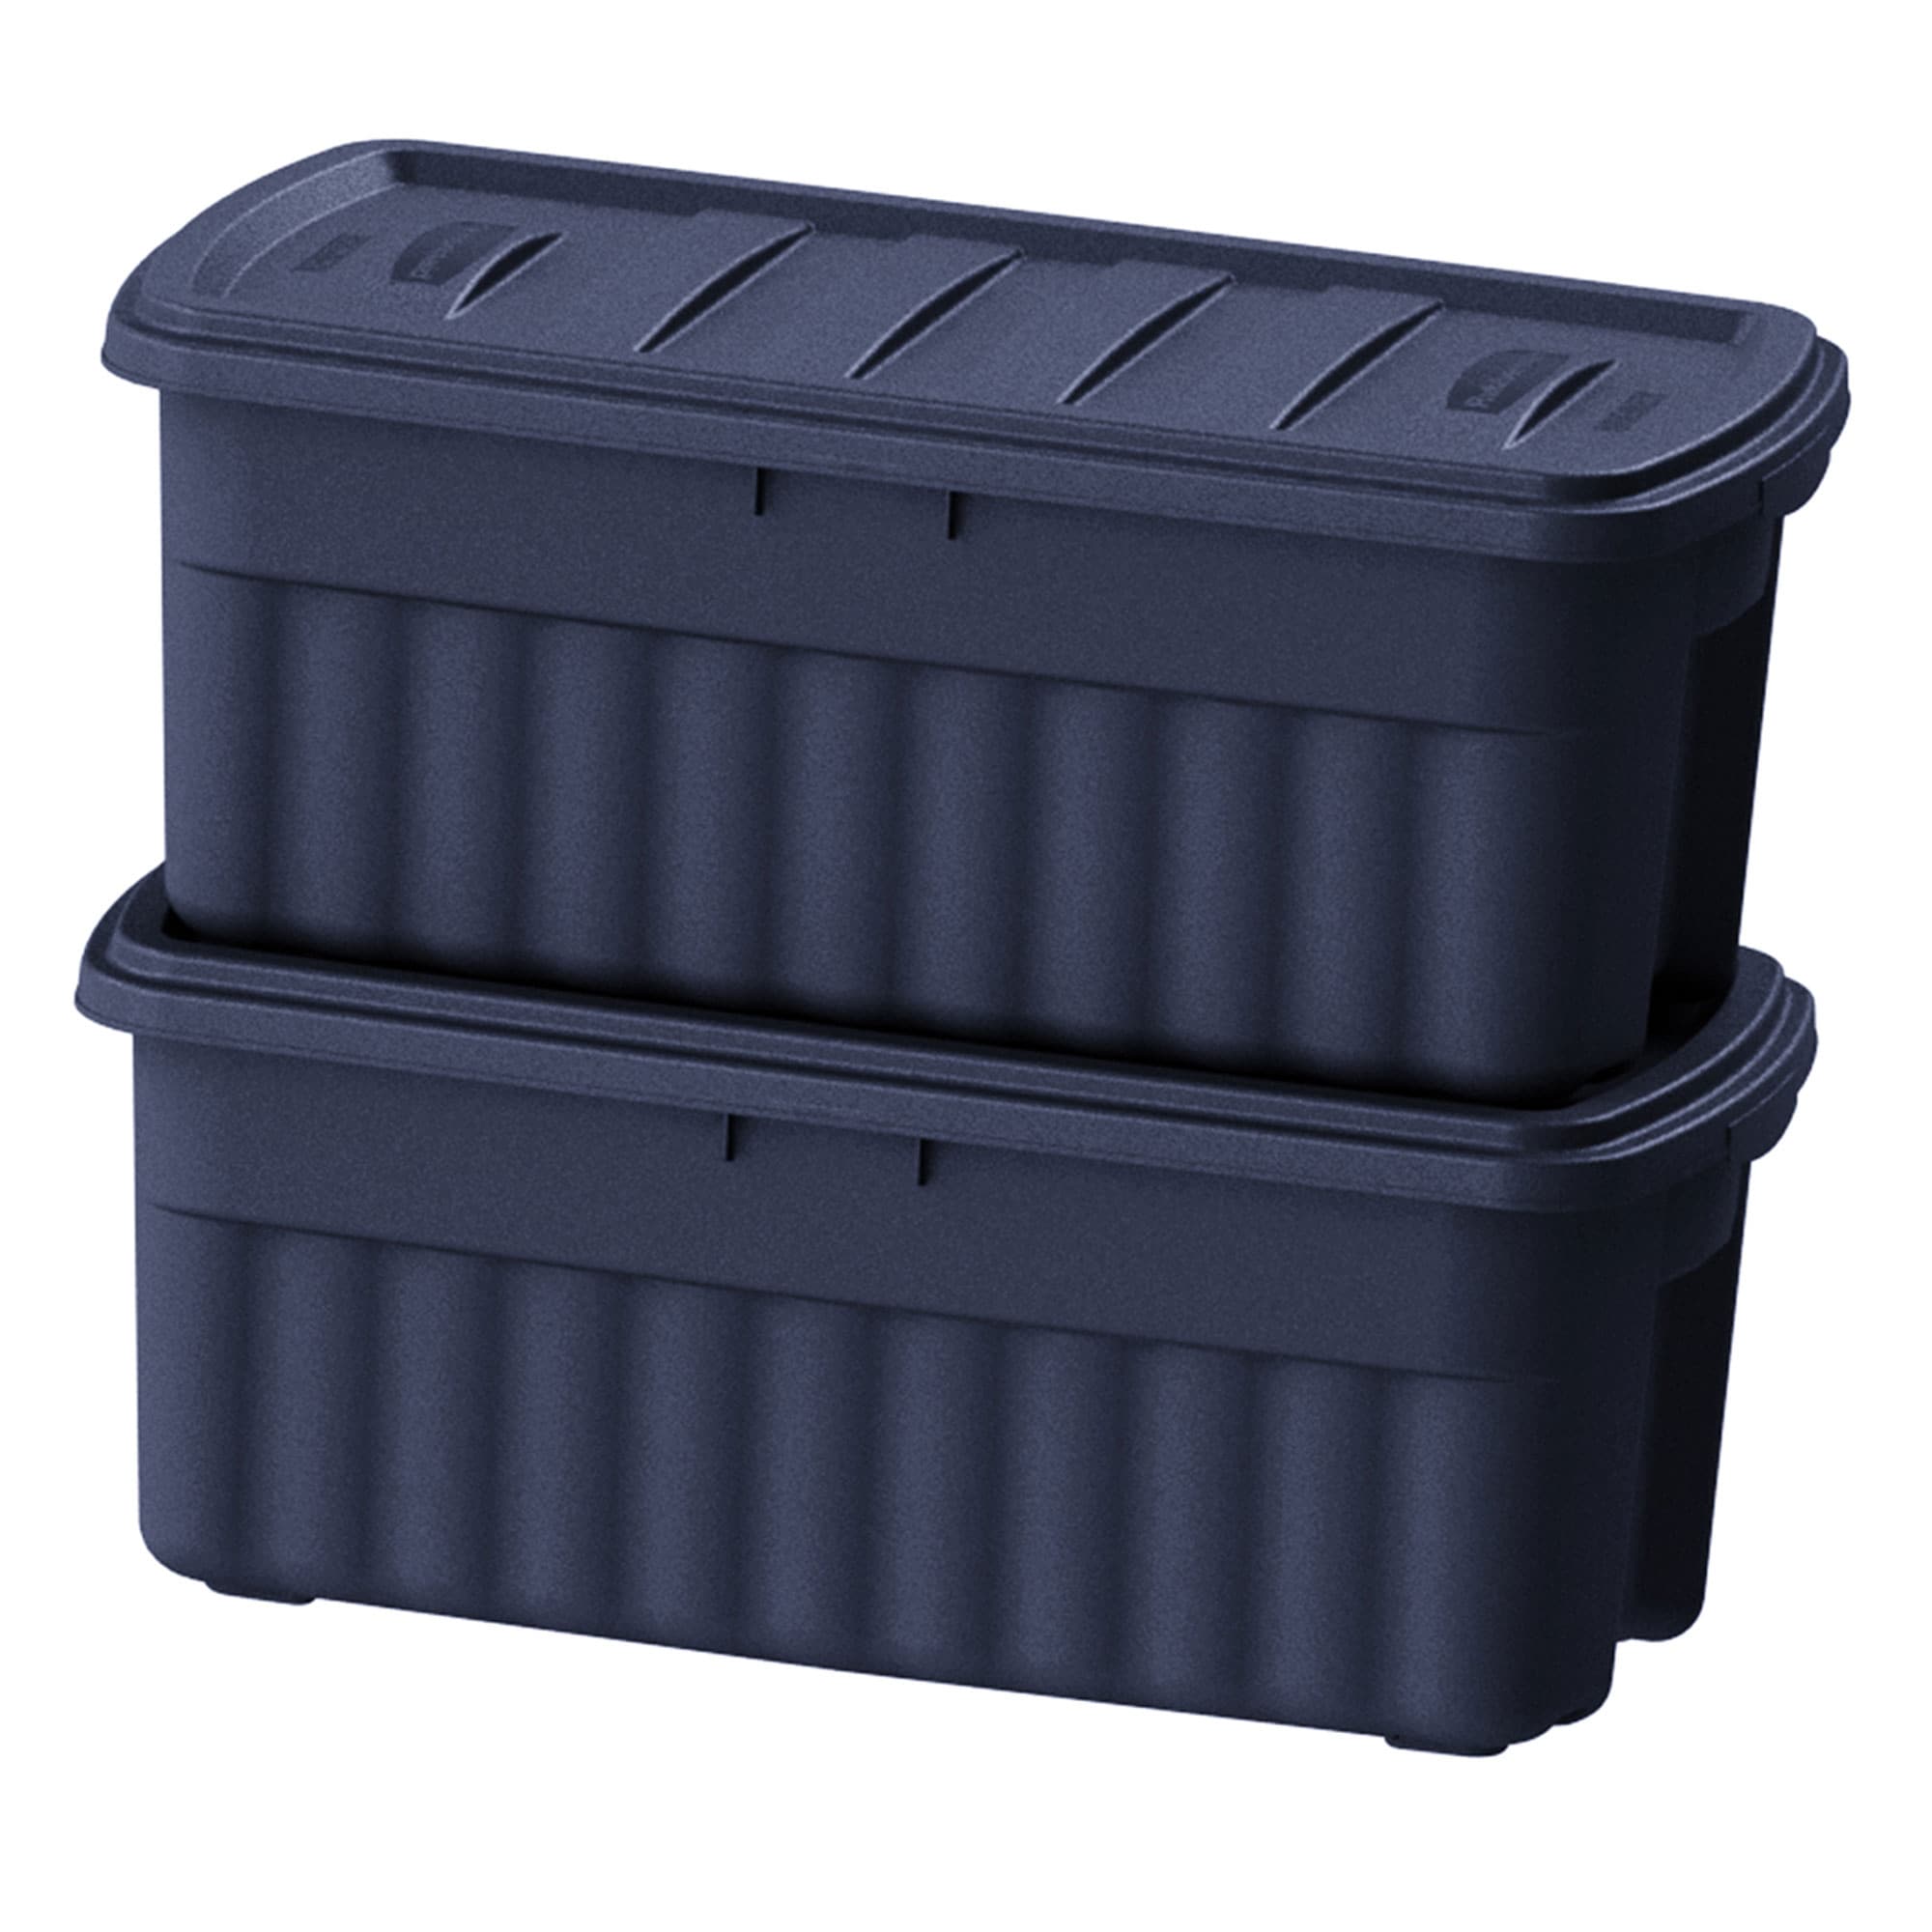 Roughneck Storage Box, 50 gal, 21.2 x 43 x 17.88, Dark Indigo